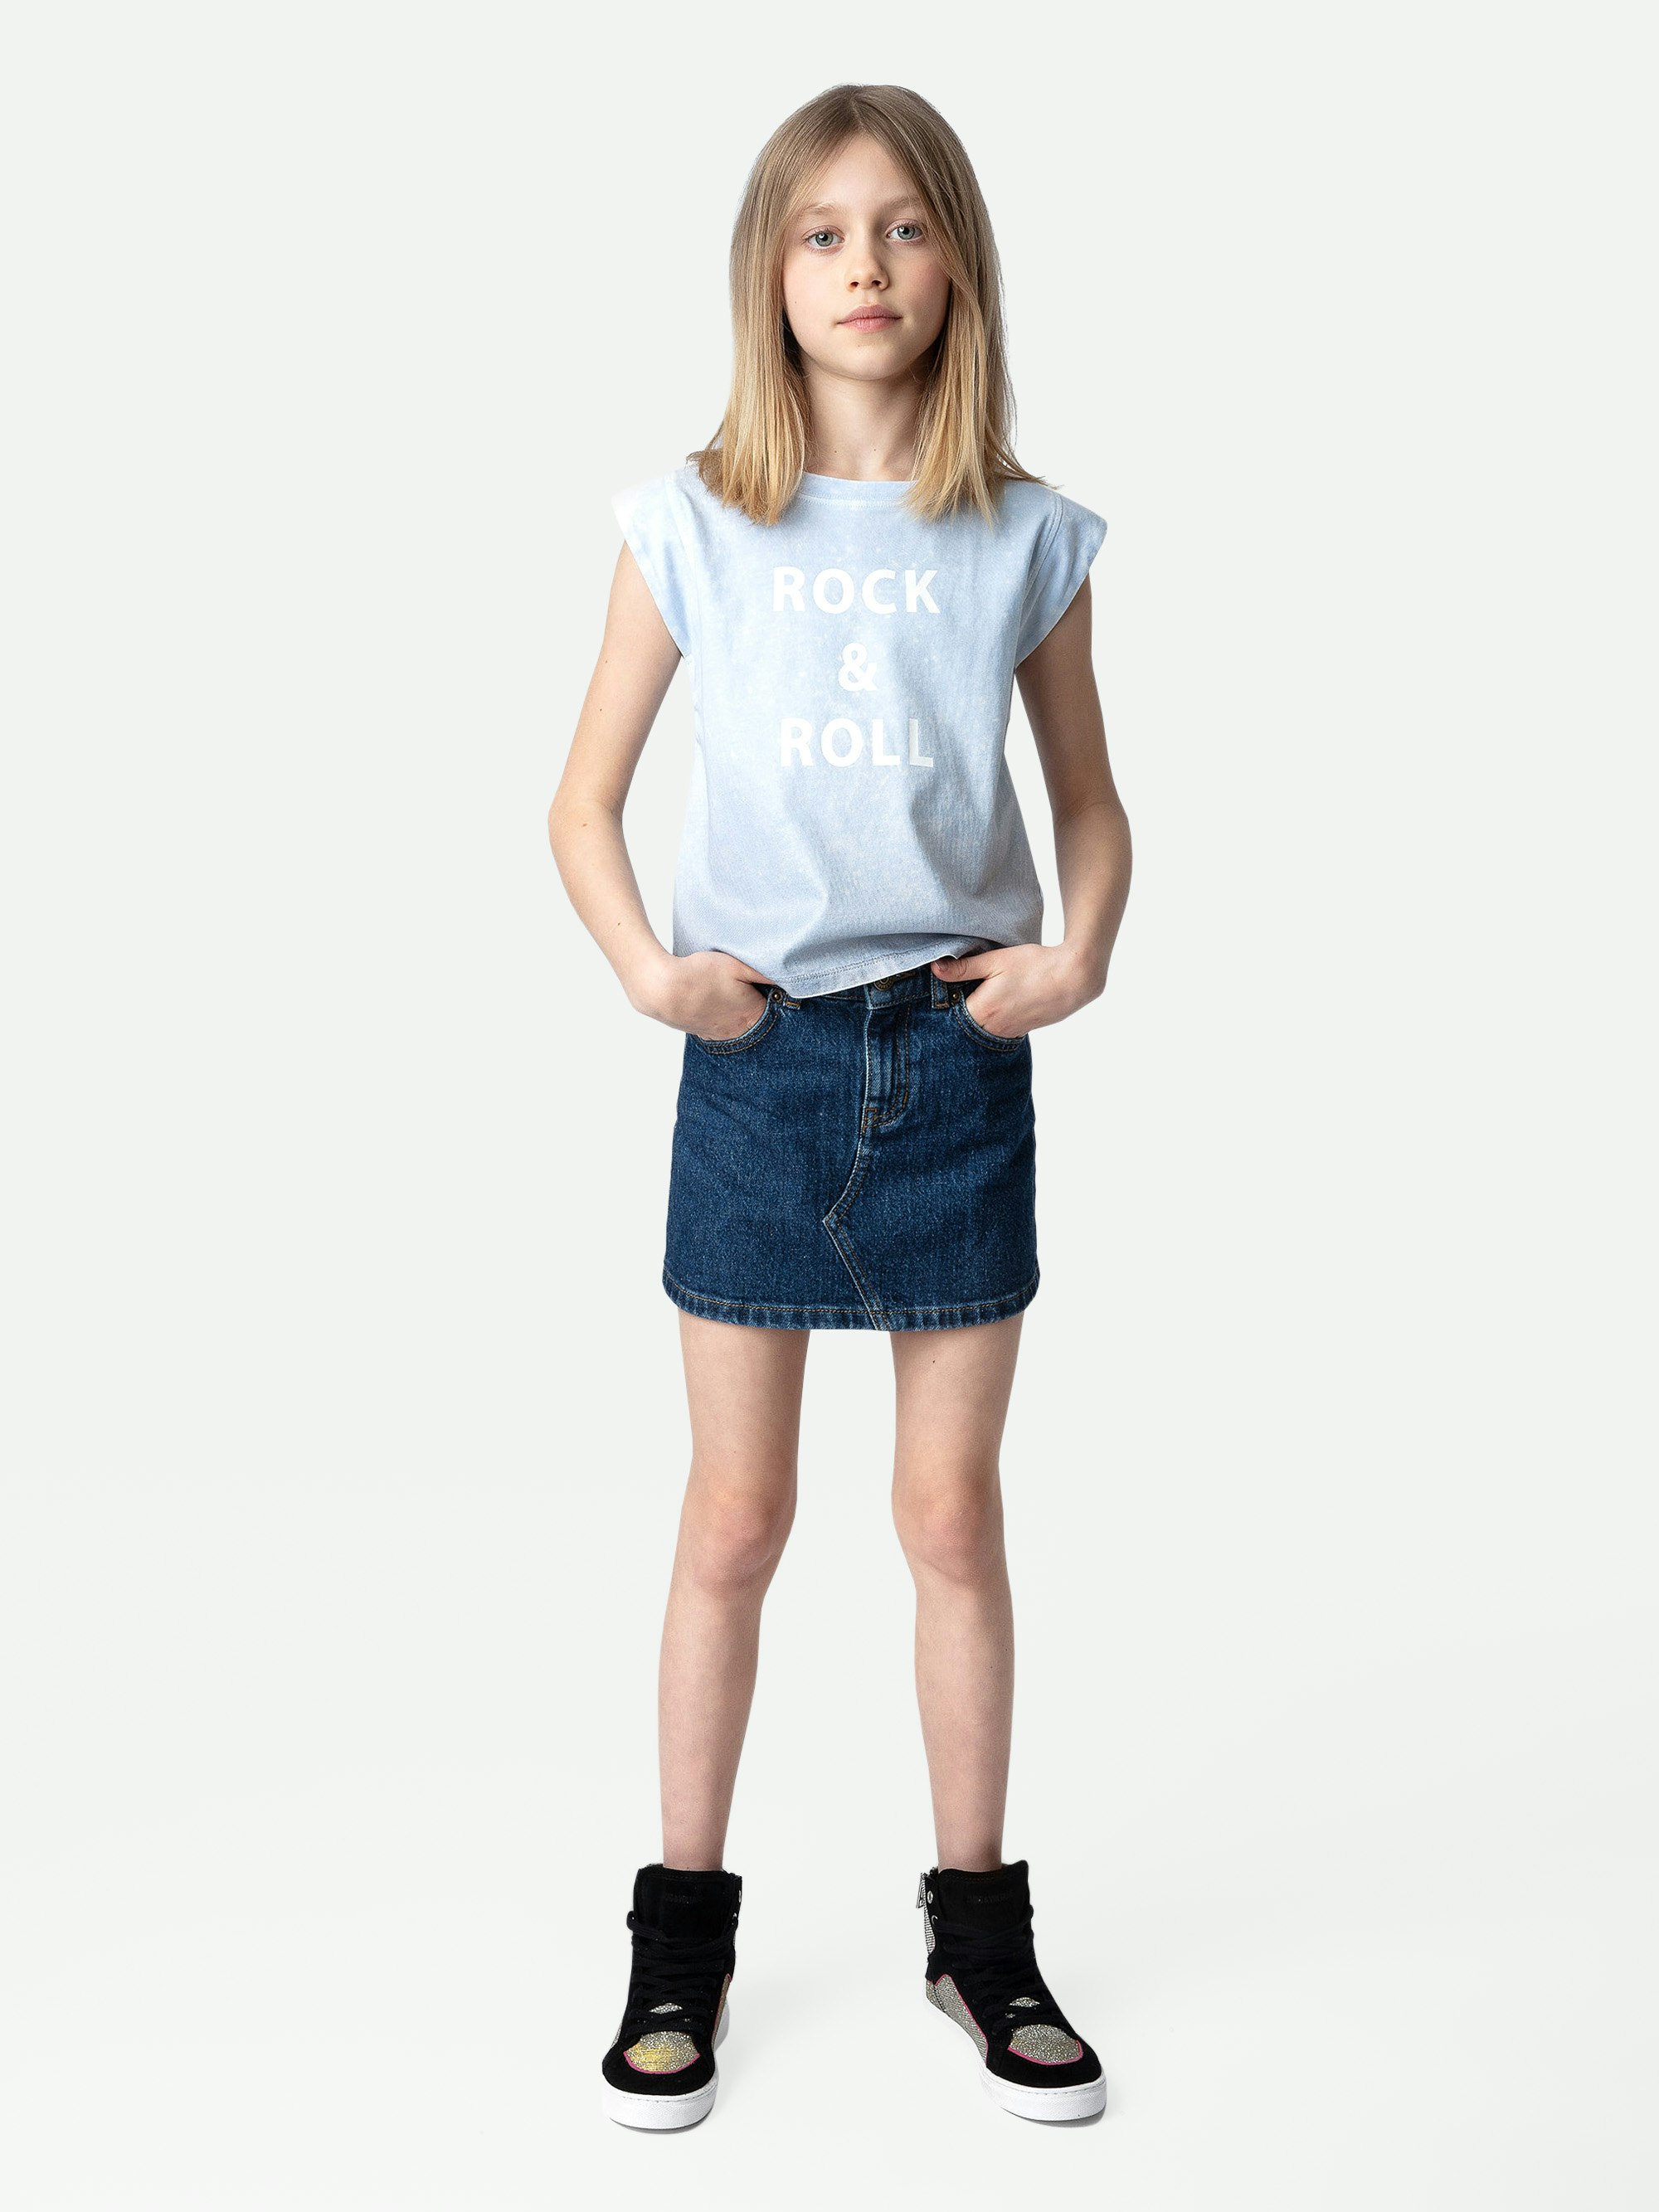 T-shirt Alin Ragazza - T-shirt da ragazza a maniche corte decorata con il messaggio "Rock & Roll".